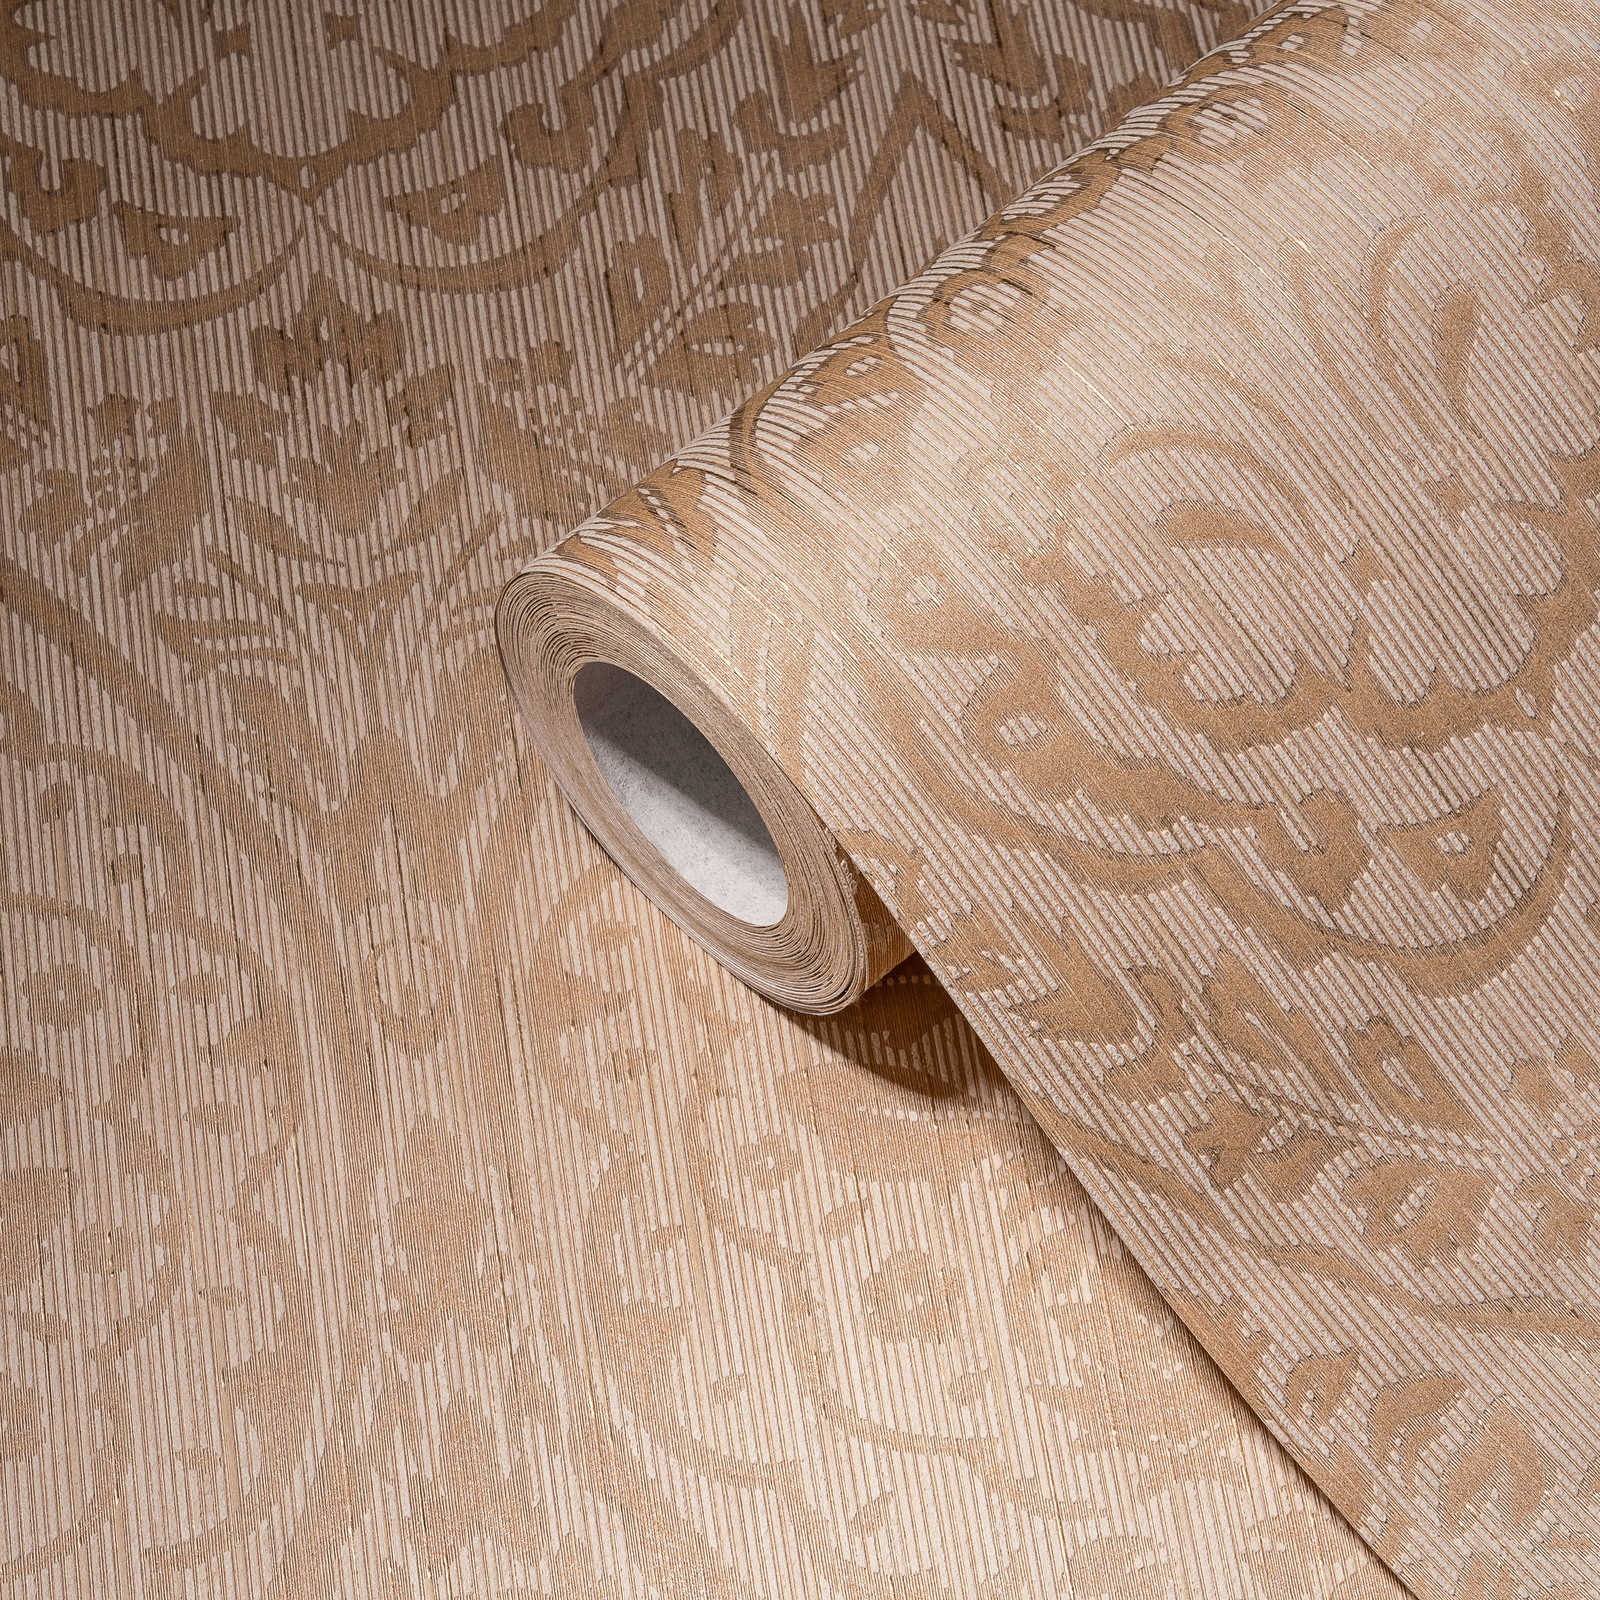             Vliesbehang met decoratief patroon & structuurdesign - beige, crème
        